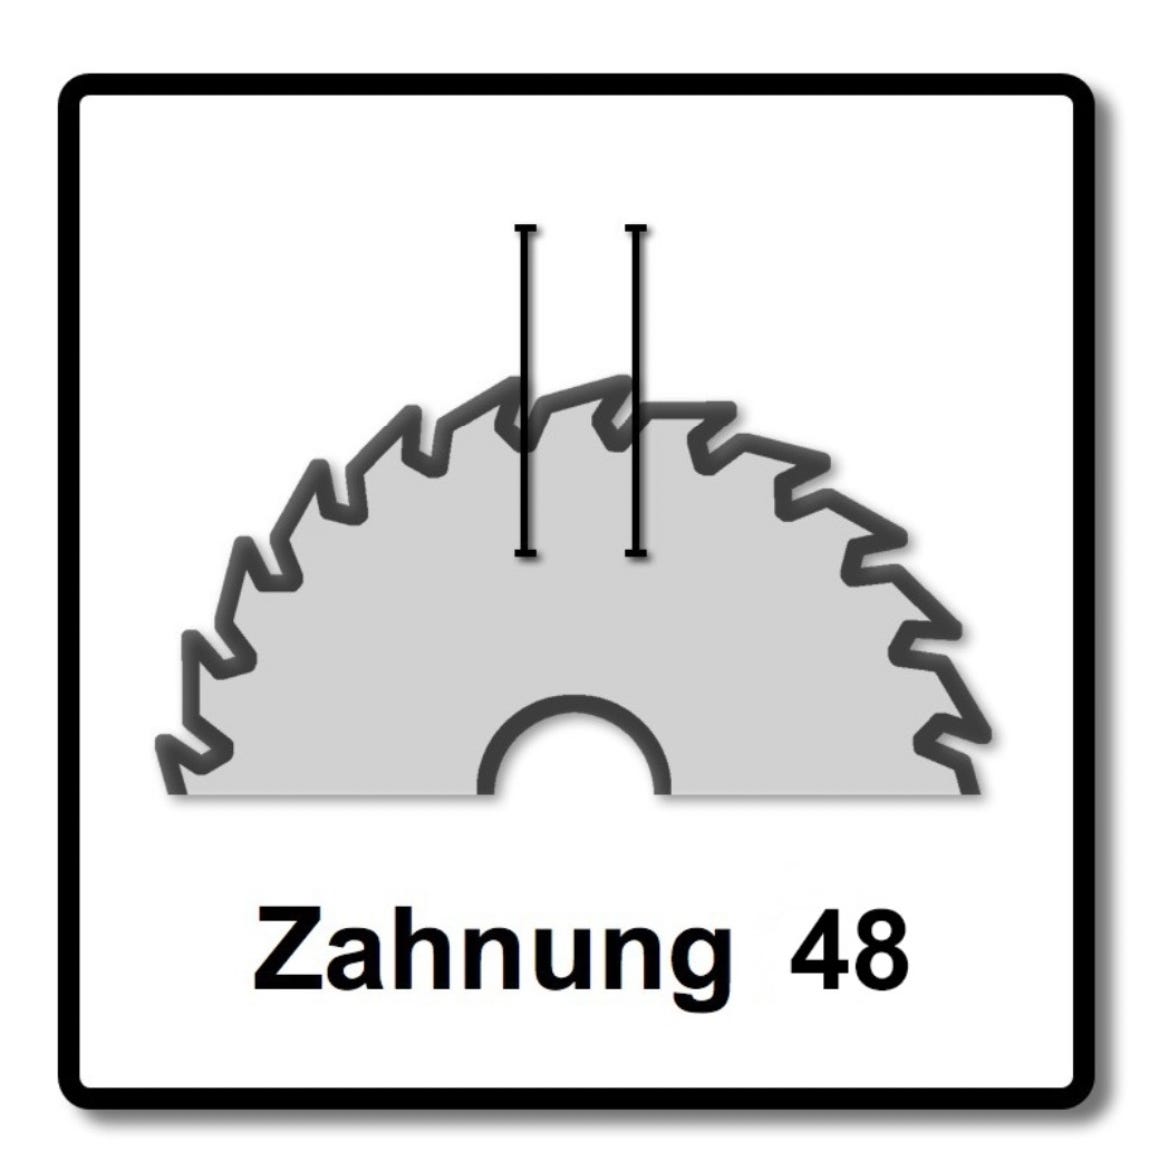 Bosch Lame de scie circulaire Standard pour bois 160 x 1,5 x 20 / 15,875 mm - 48 dents ( 2608837678 ) 3